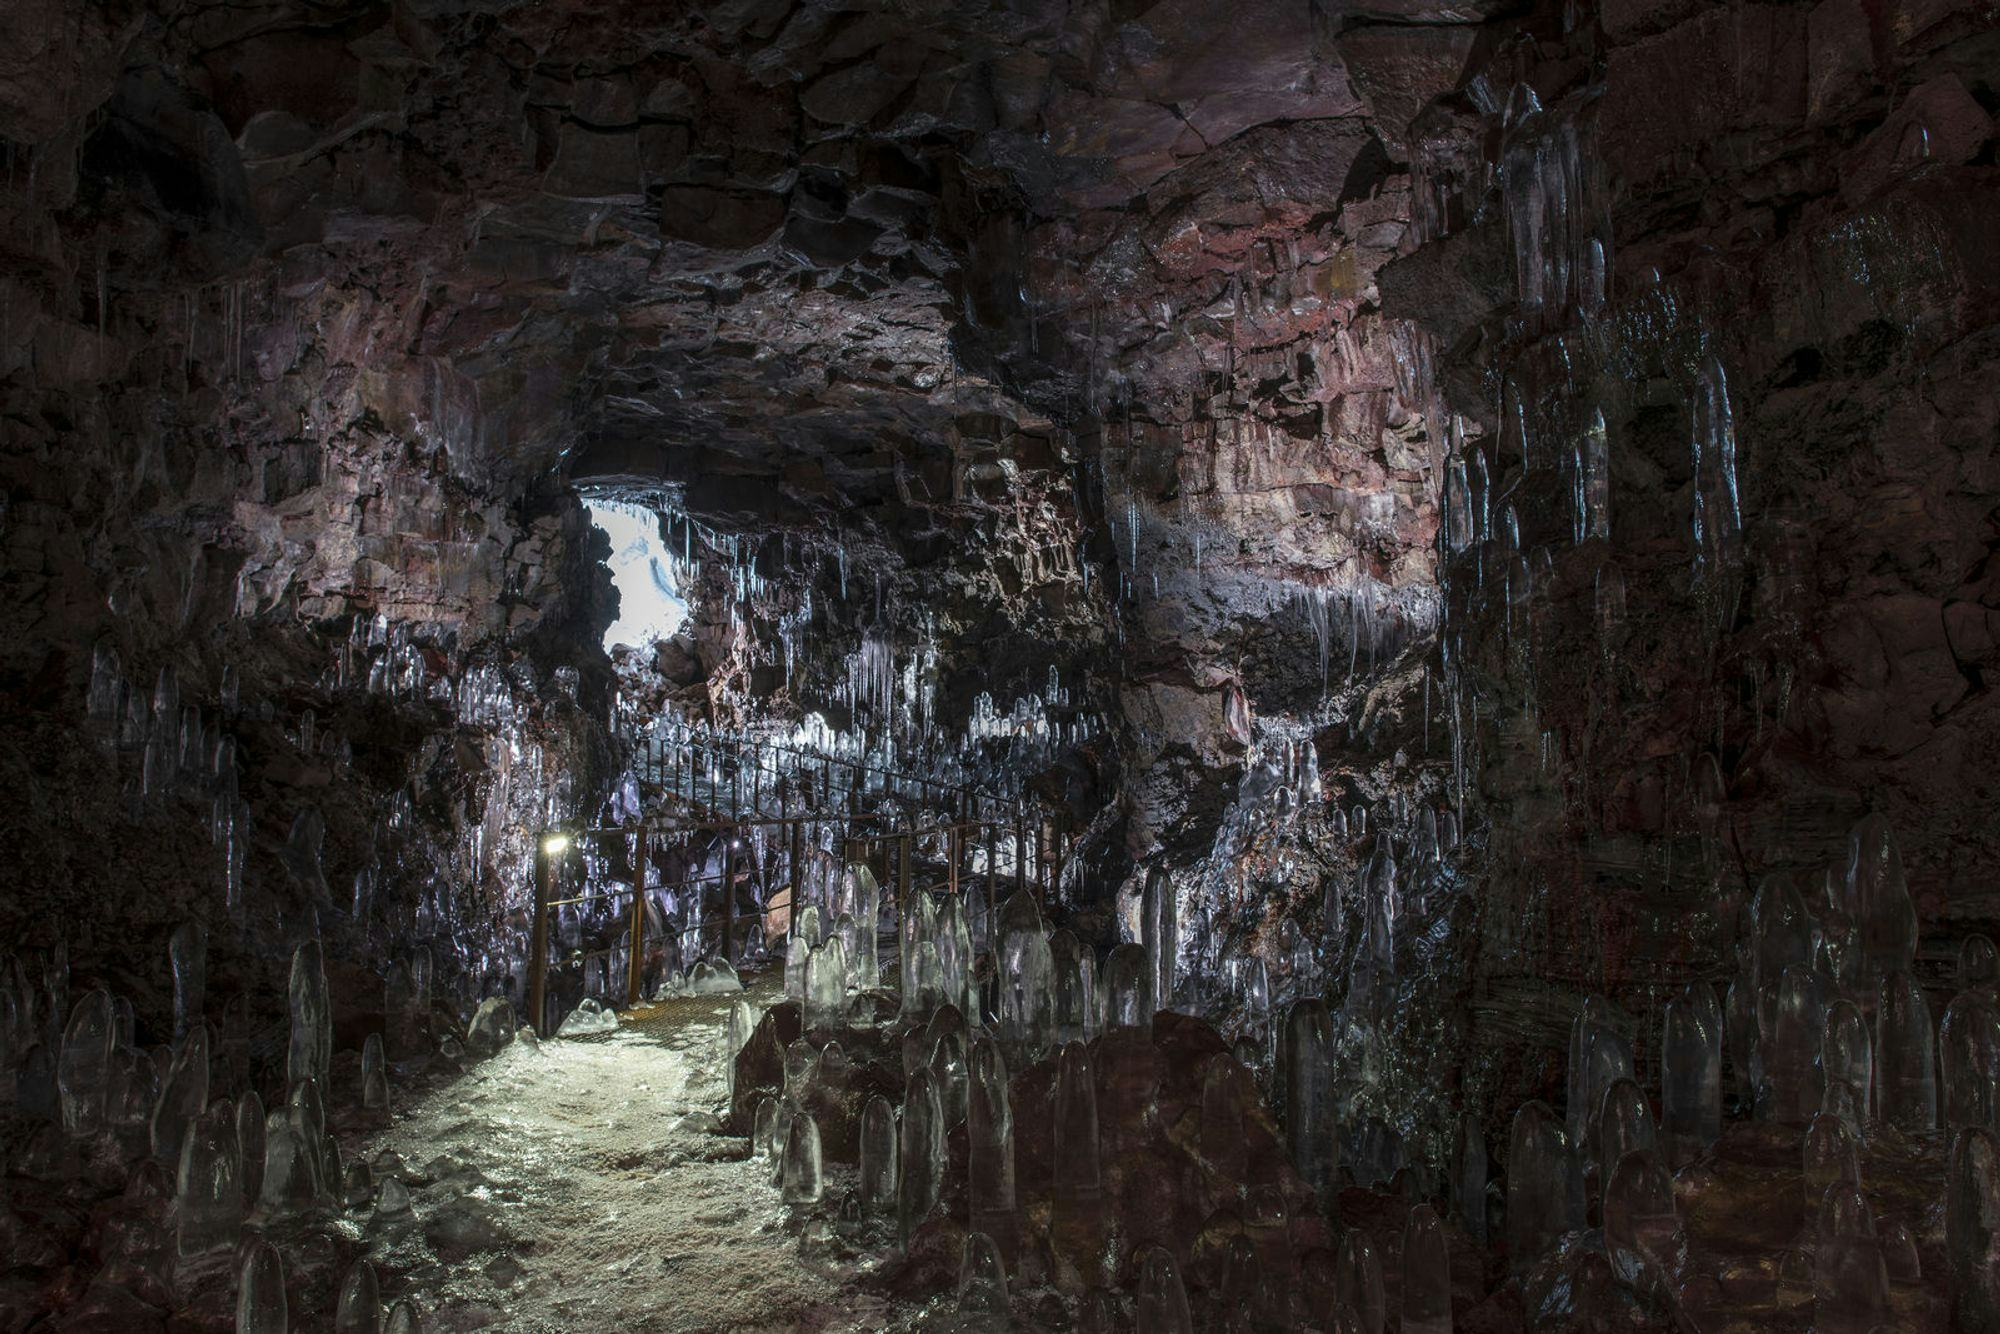 A cave interior